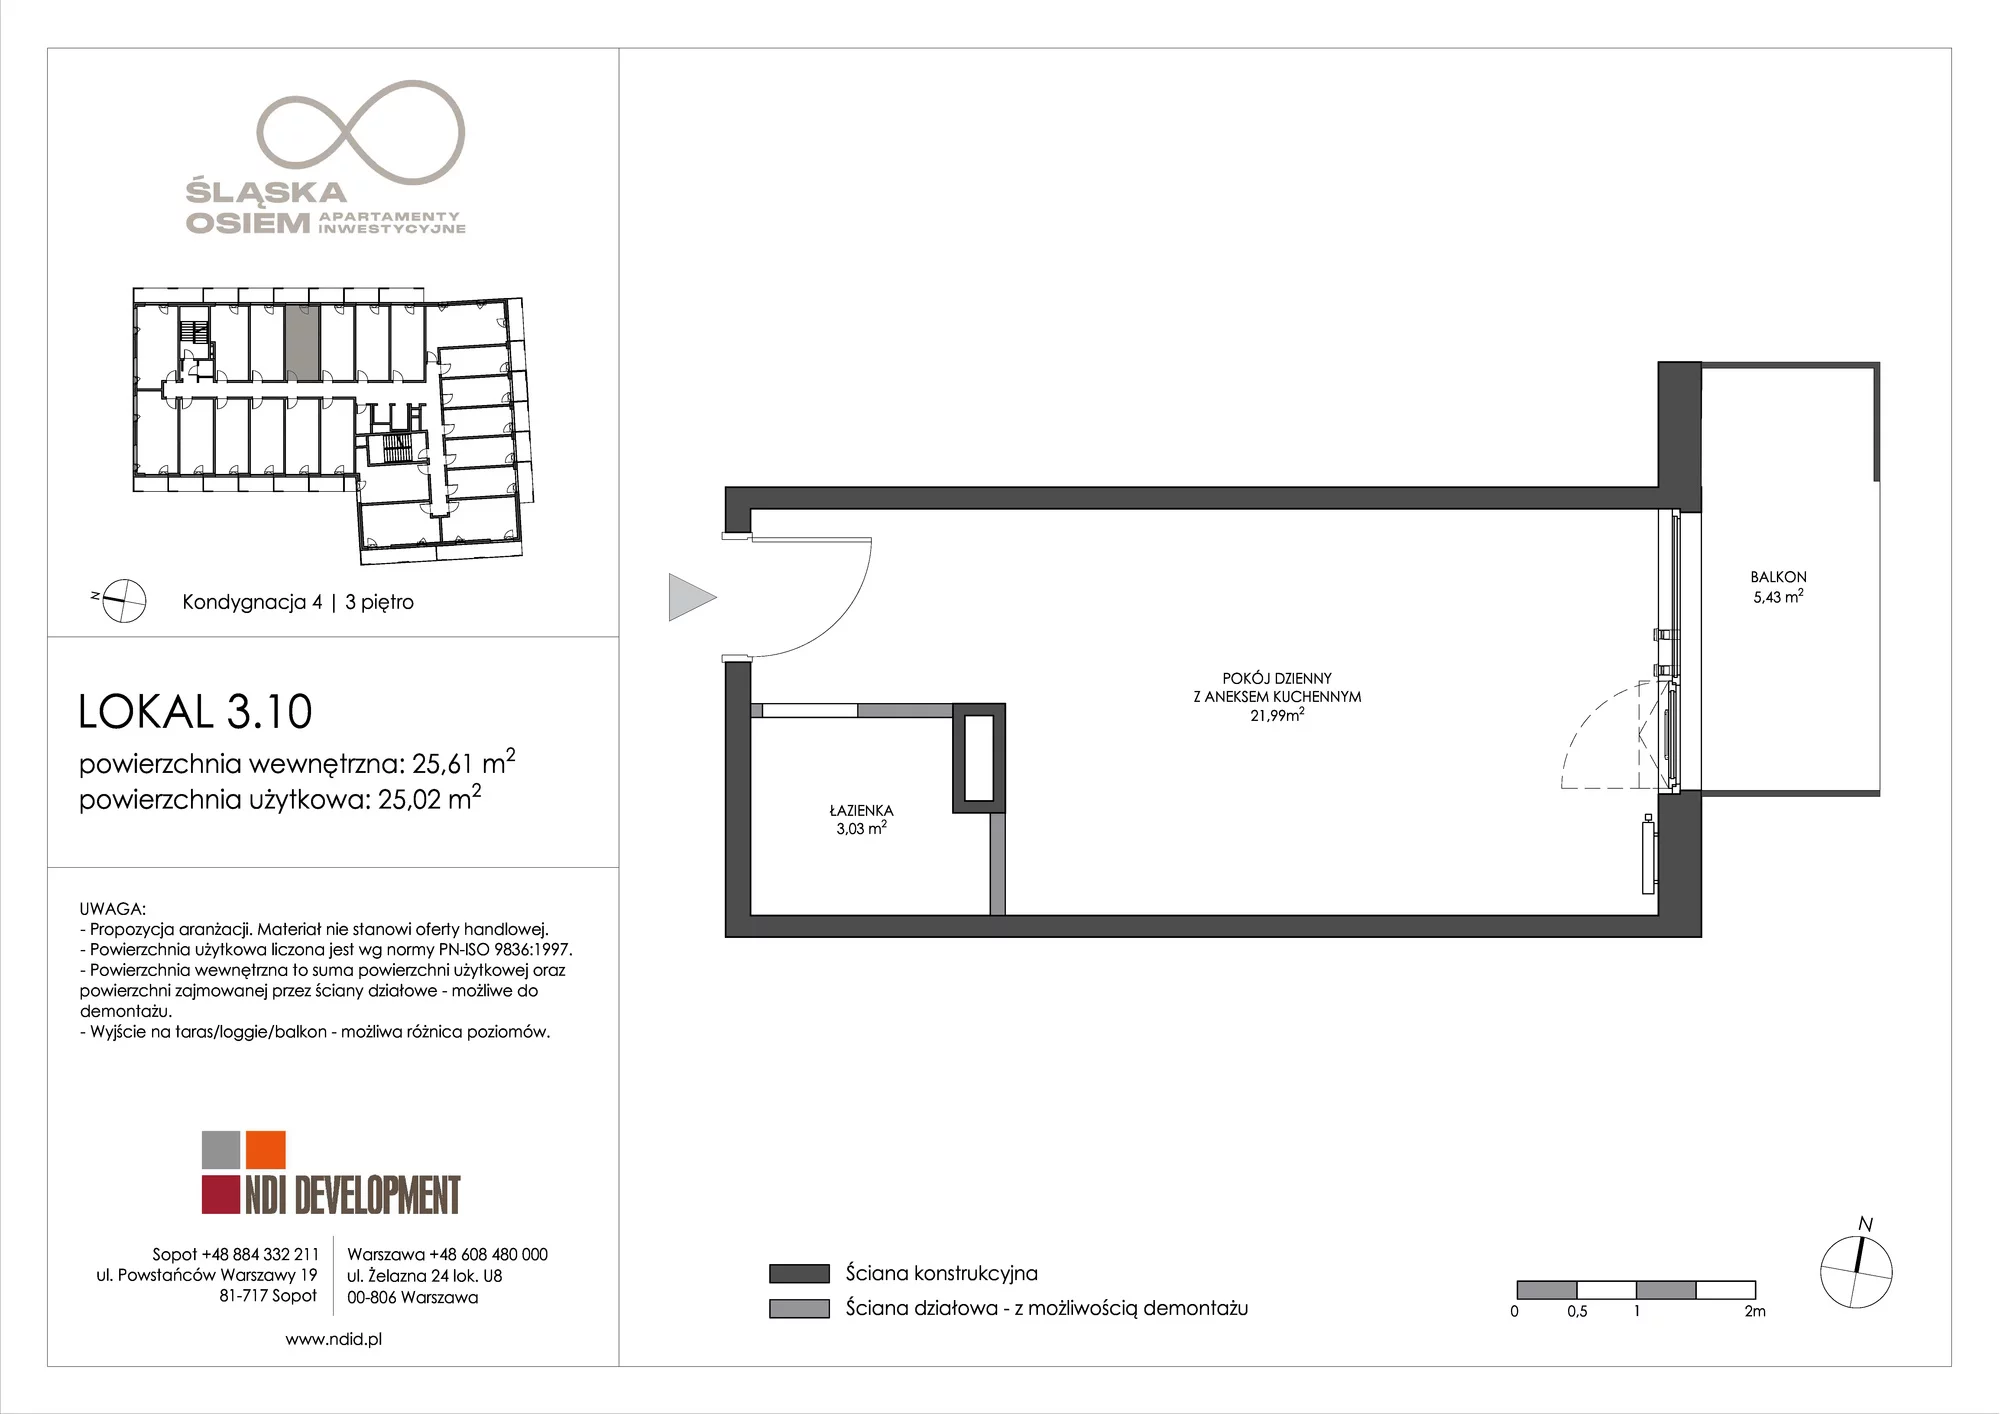 Apartament inwestycyjny 25,61 m², piętro 3, oferta nr 3.10, Śląska Osiem, Gdańsk, Przymorze, ul. Śląska 8